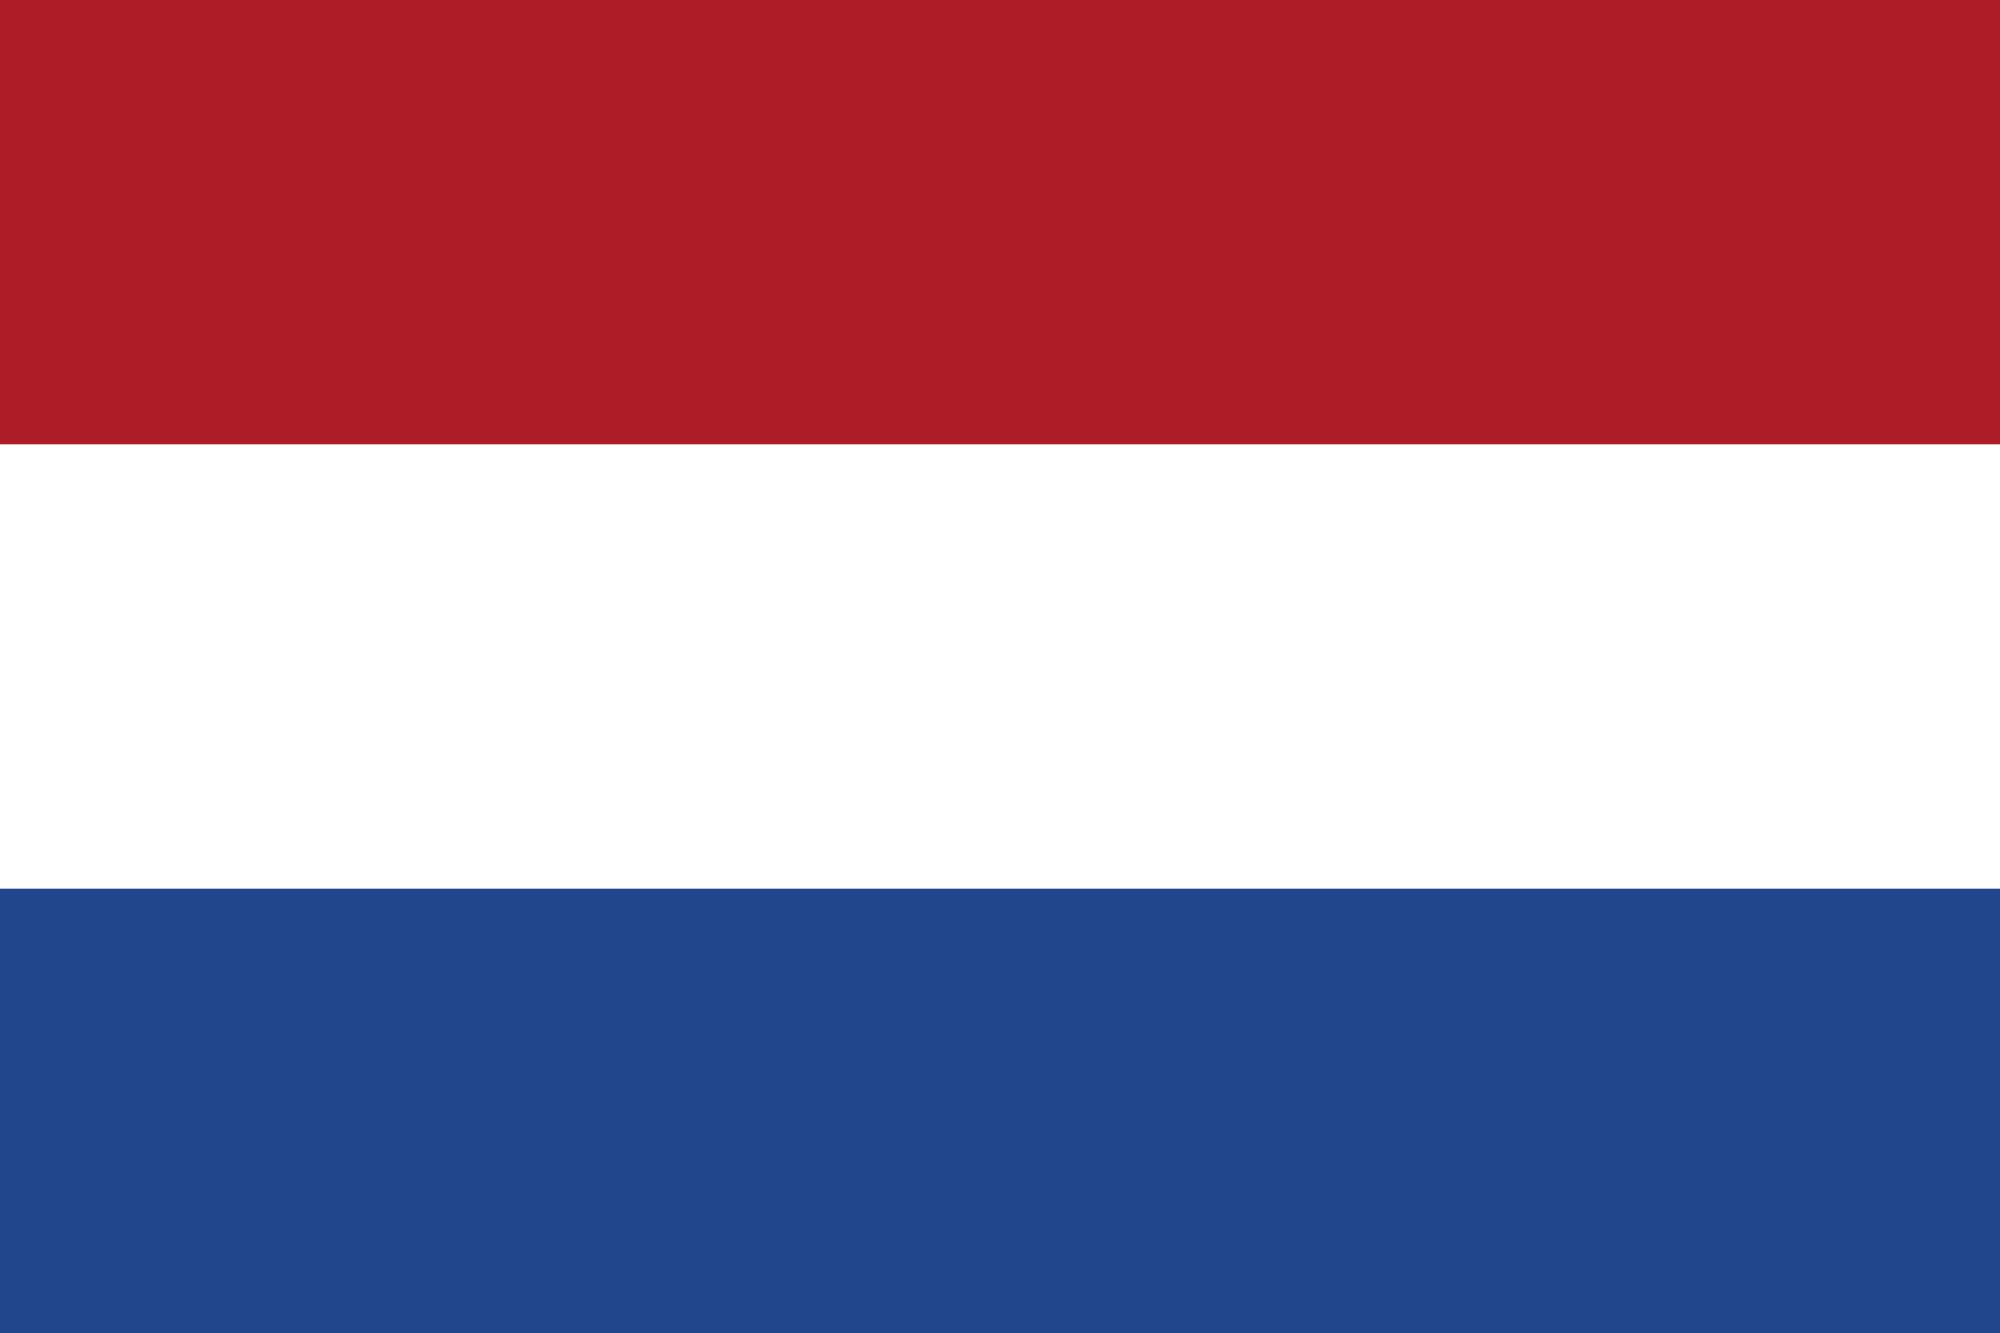 Drapeau Pays-Bas, le drapeau hollandais